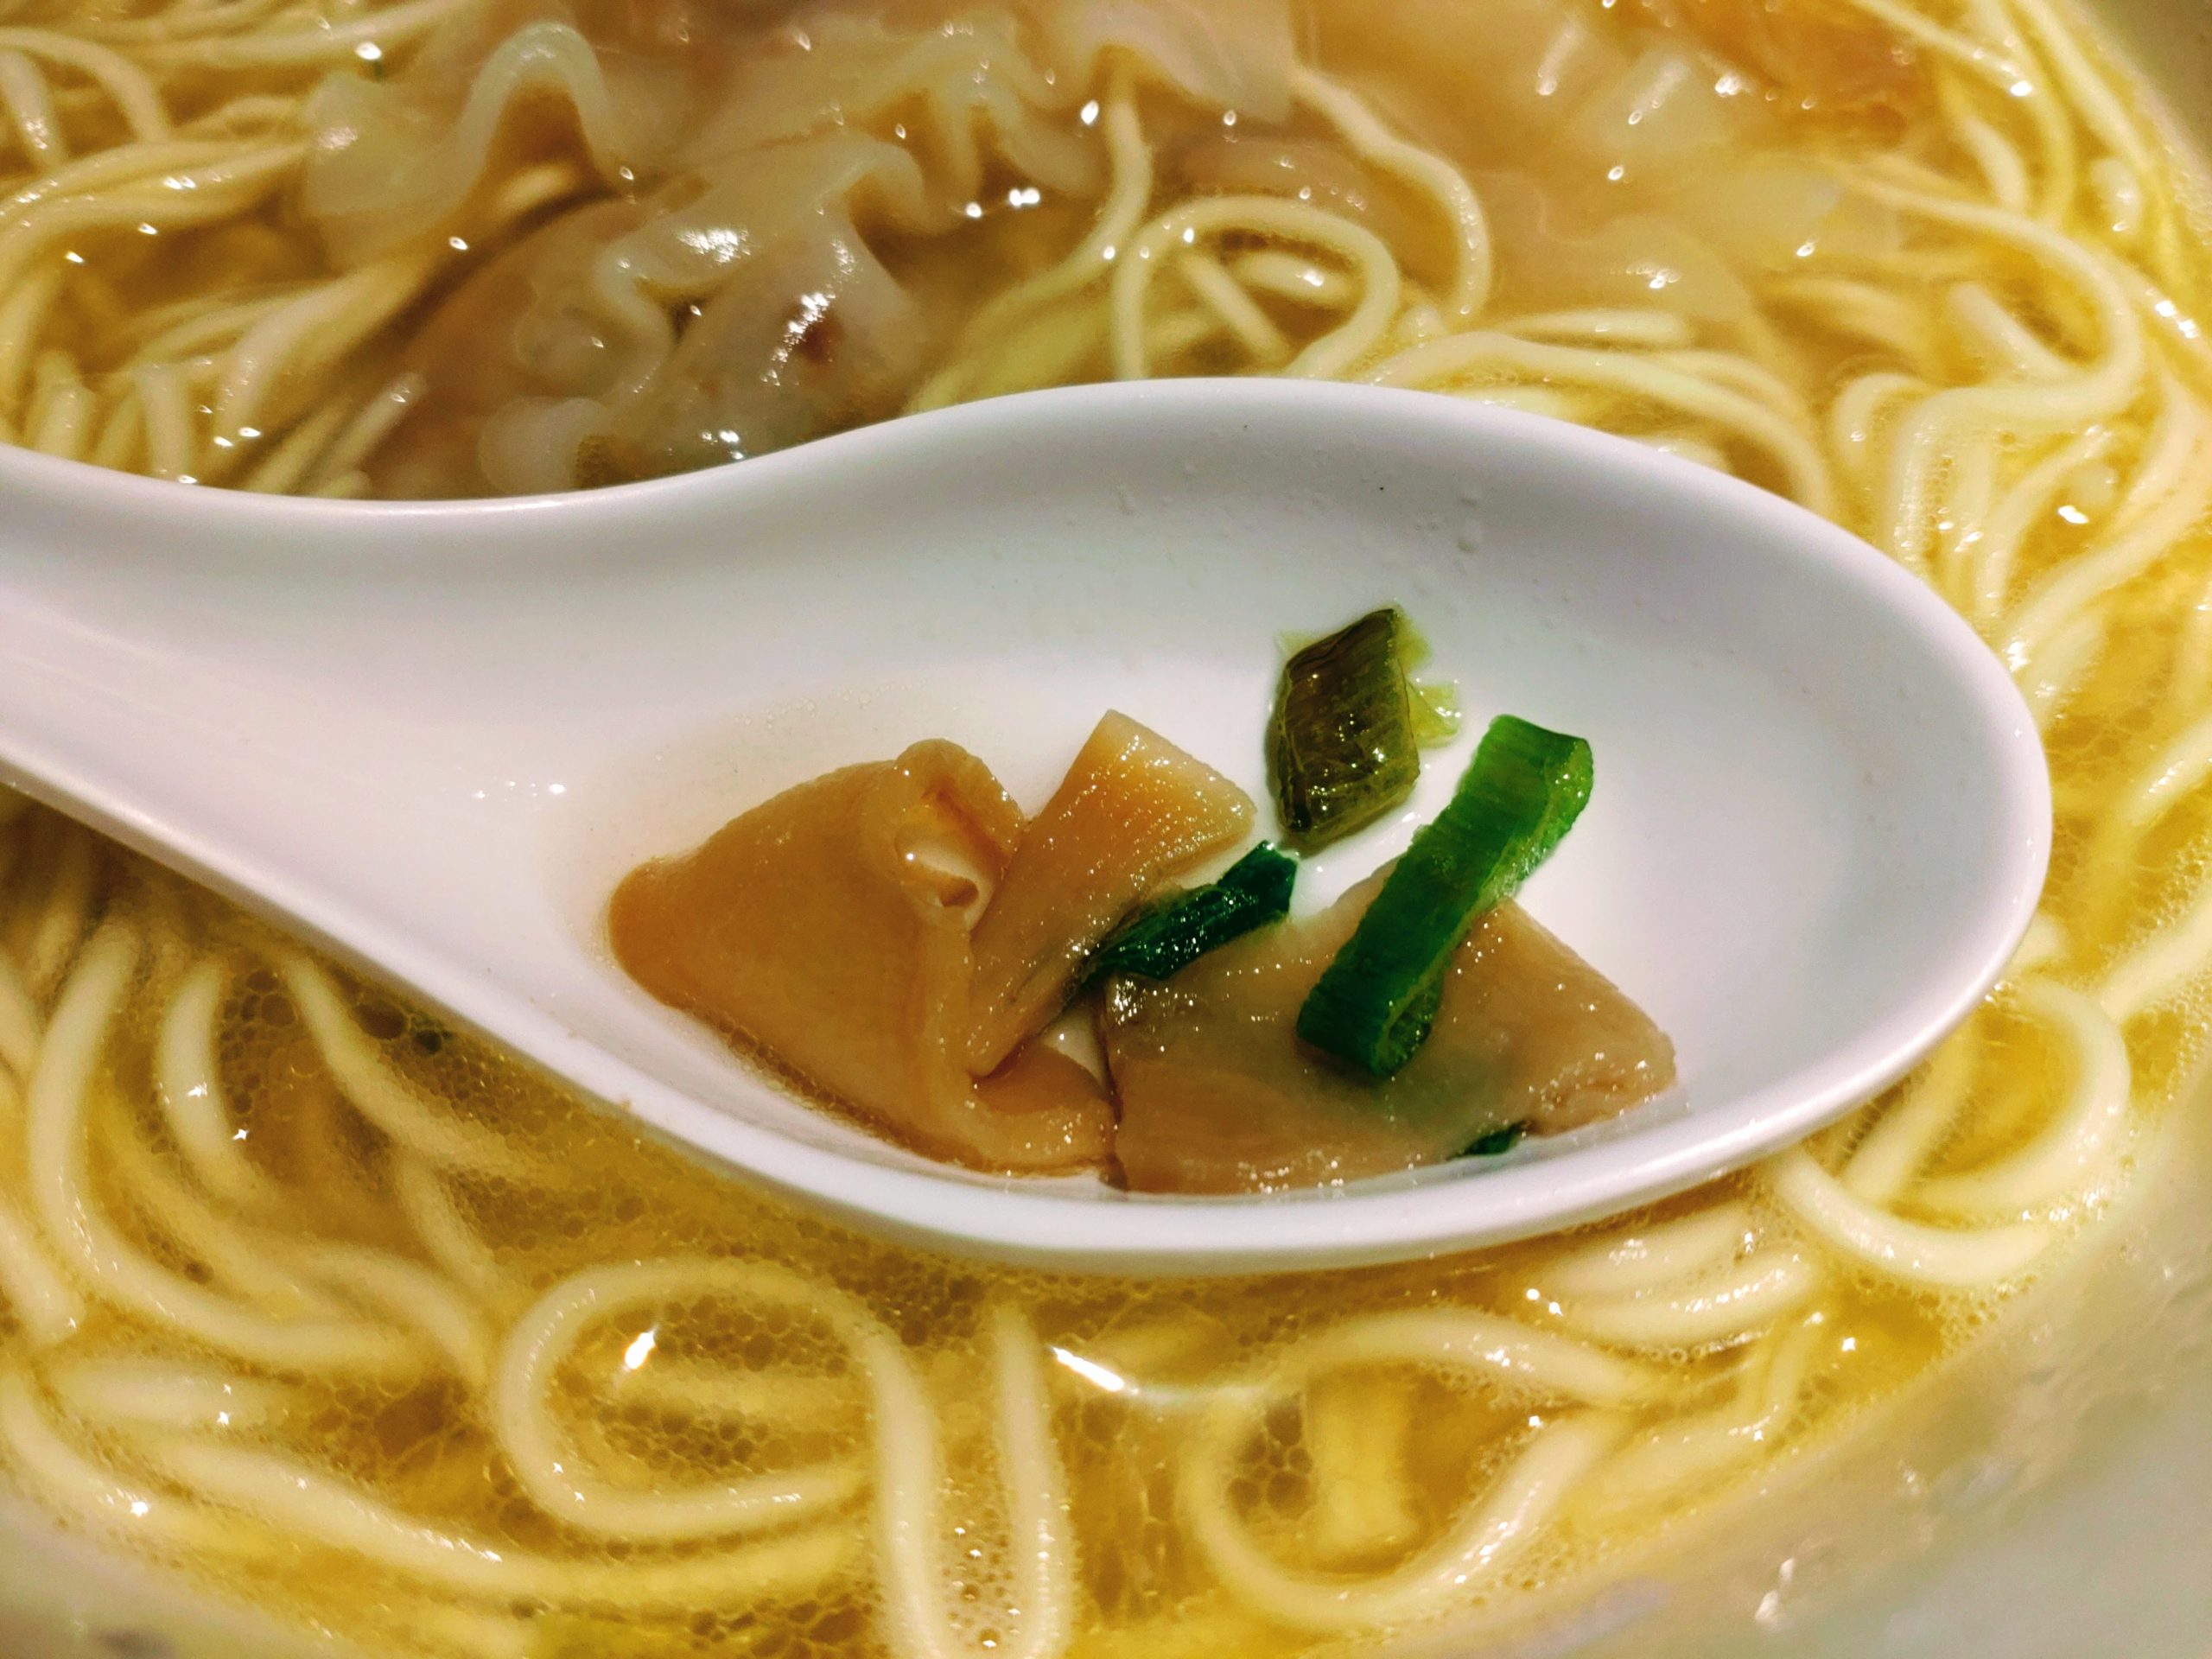 ワンタン麺の最高峰の店 八雲の一杯 ワンタン麺 白醤油味の具材